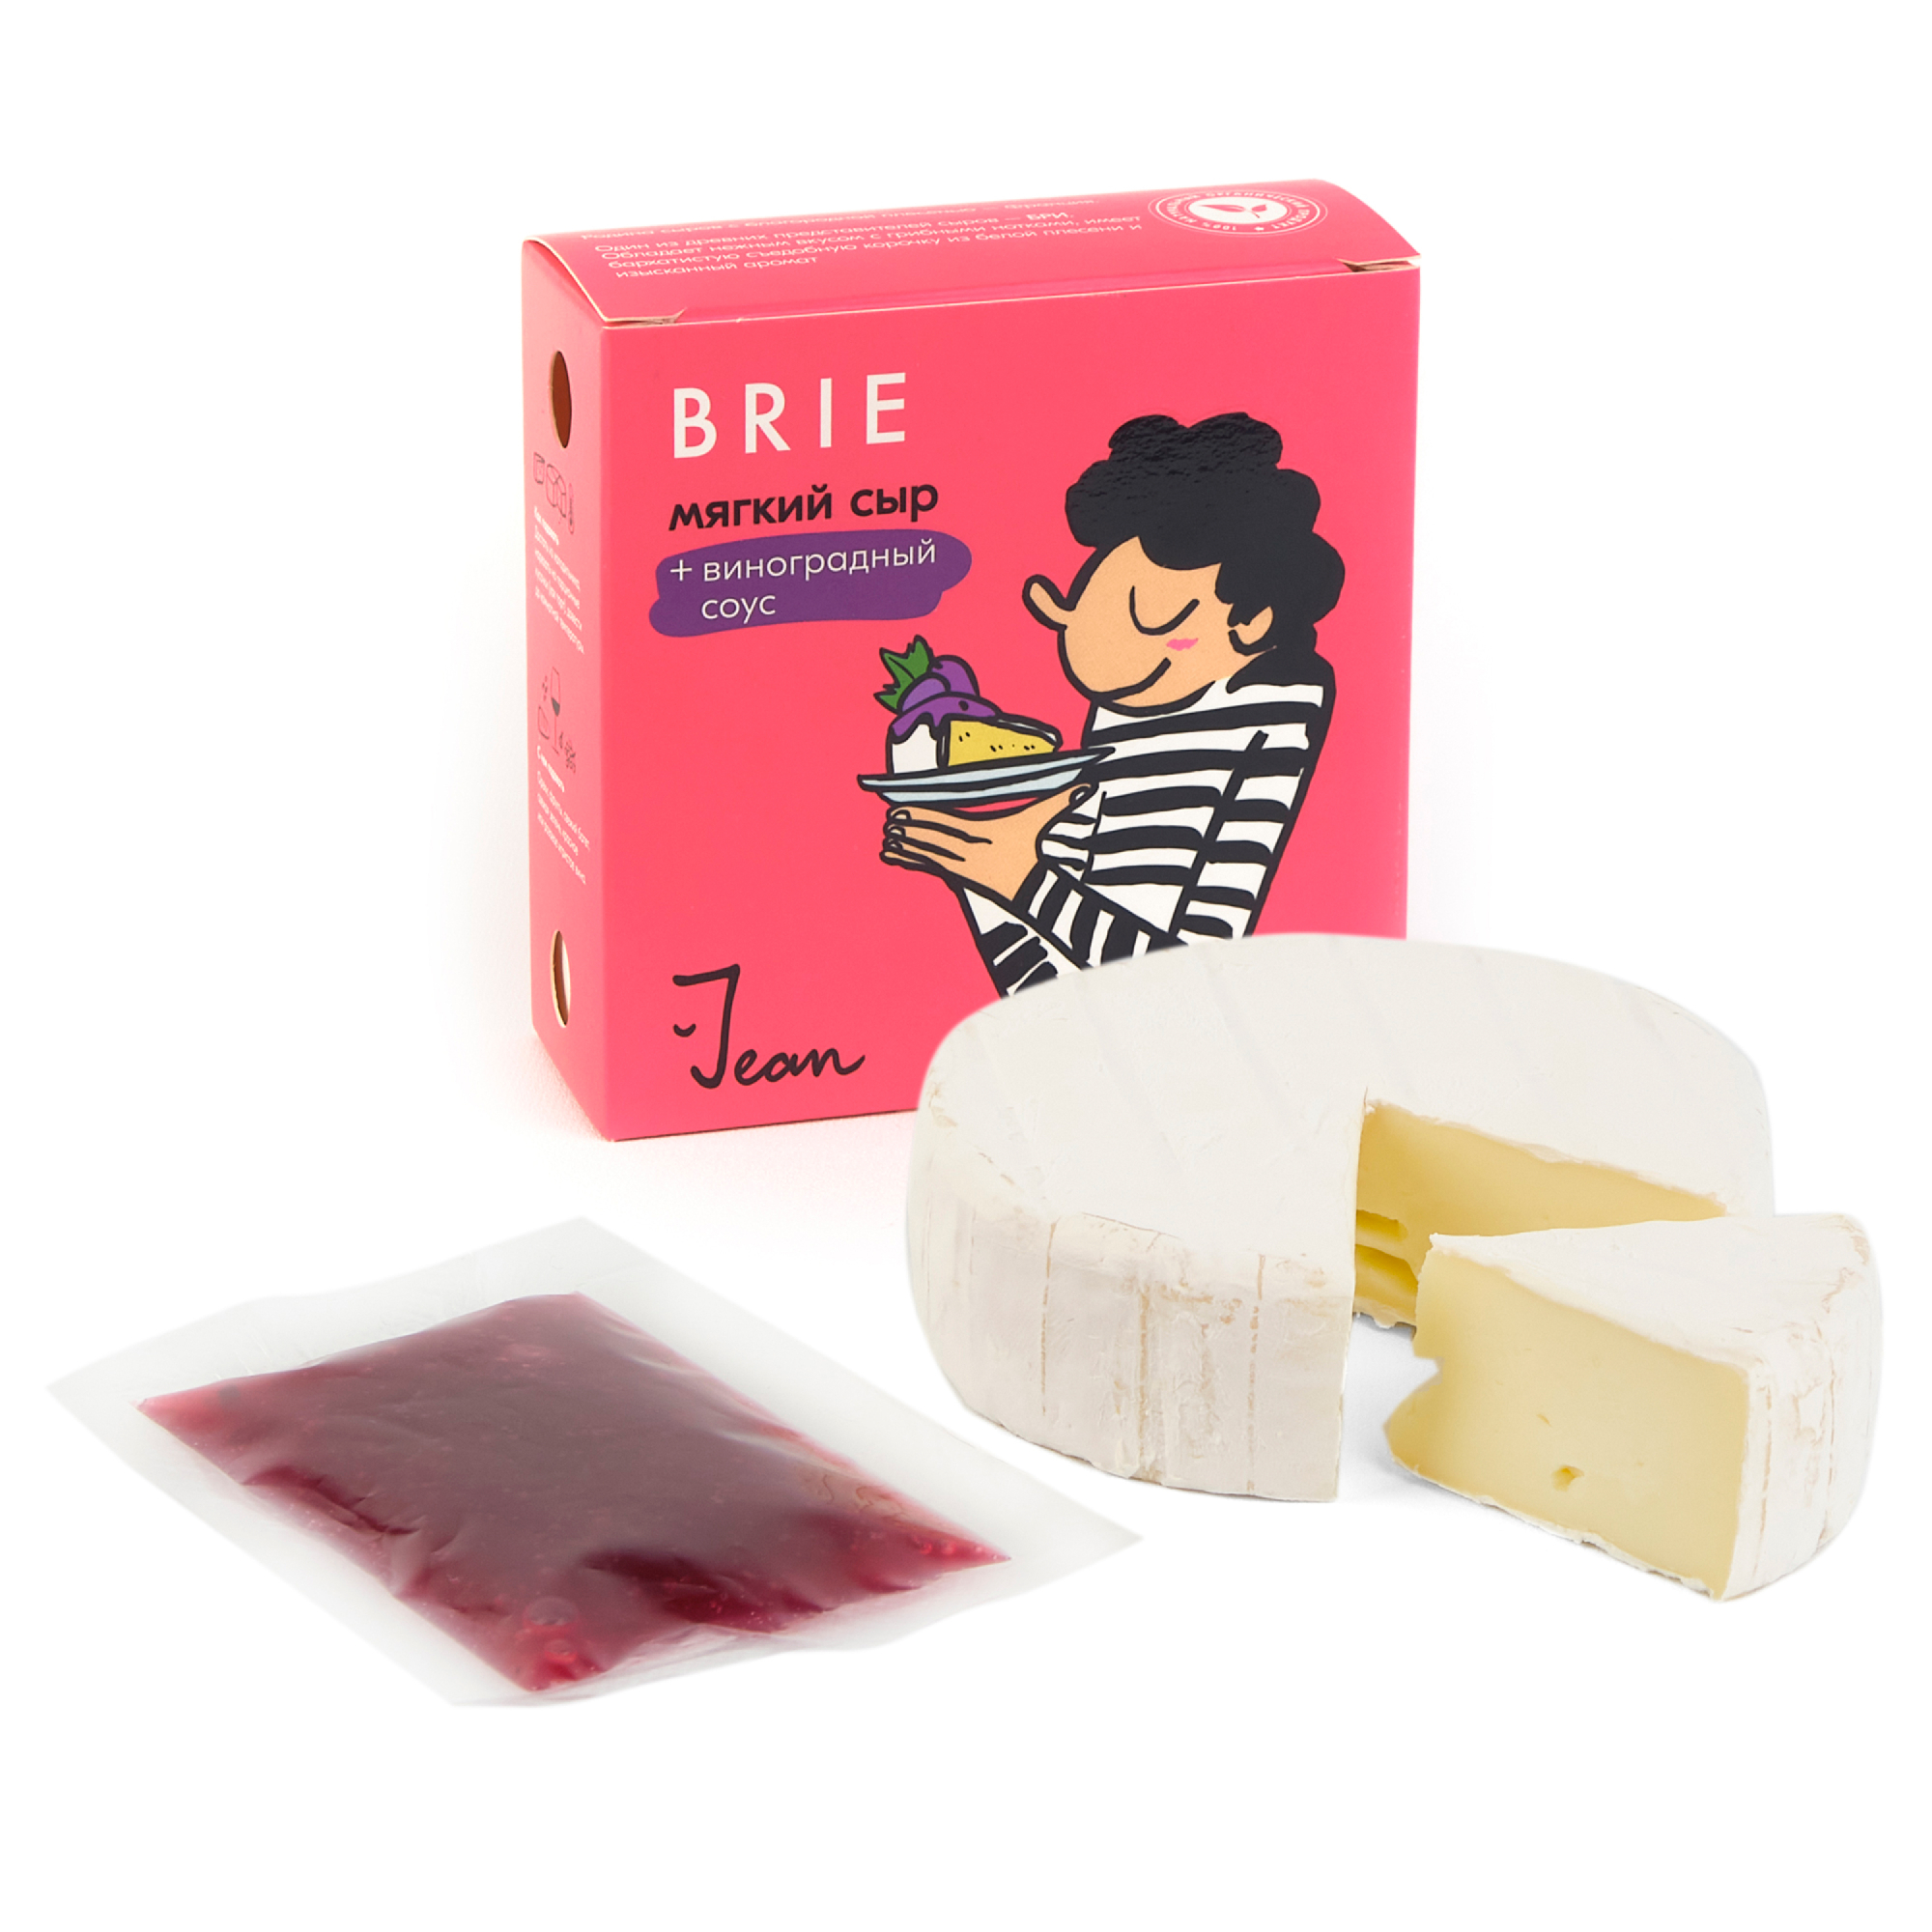 Мягкий сыр Jean Бри с виноградным соусом 50%, 145 г